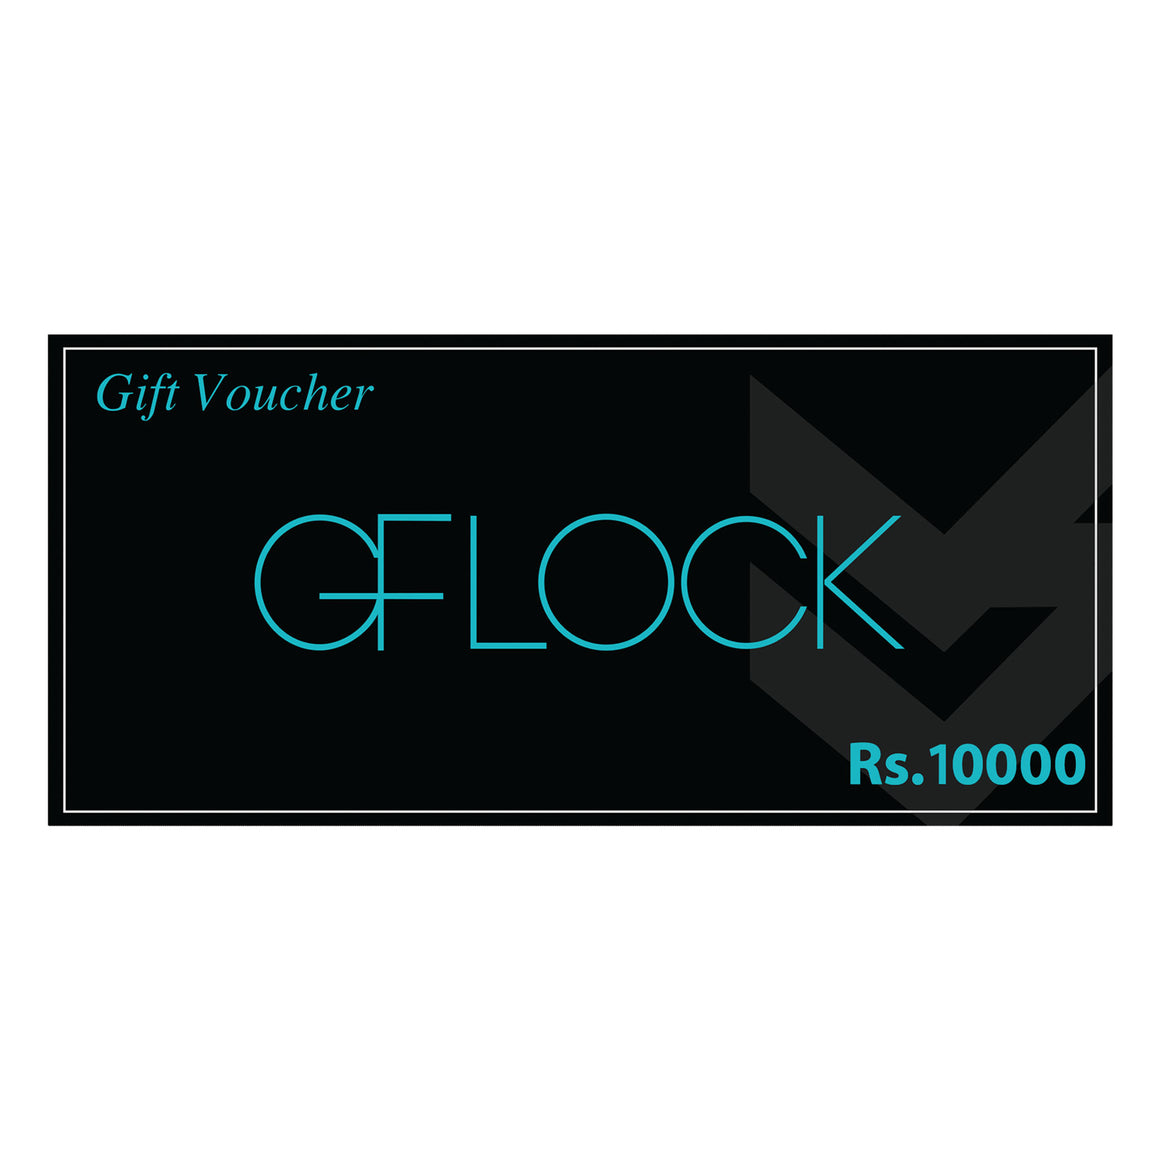 GFLOCK GIFT VOUCHER - LKR 10,000